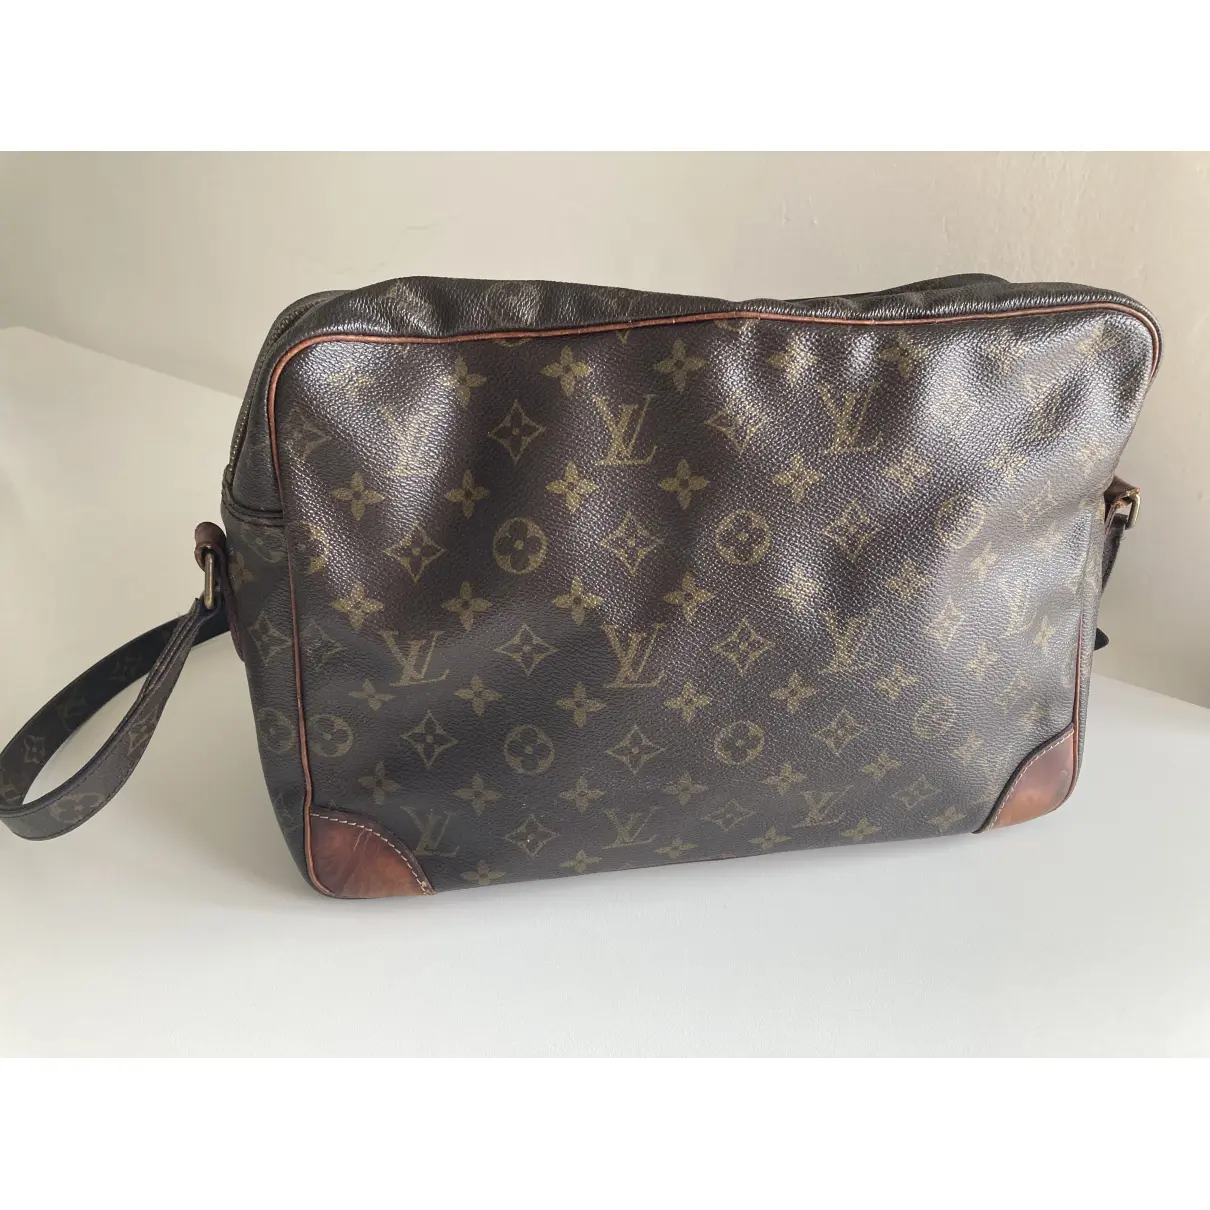 Buy Louis Vuitton Reporter cloth handbag online - Vintage